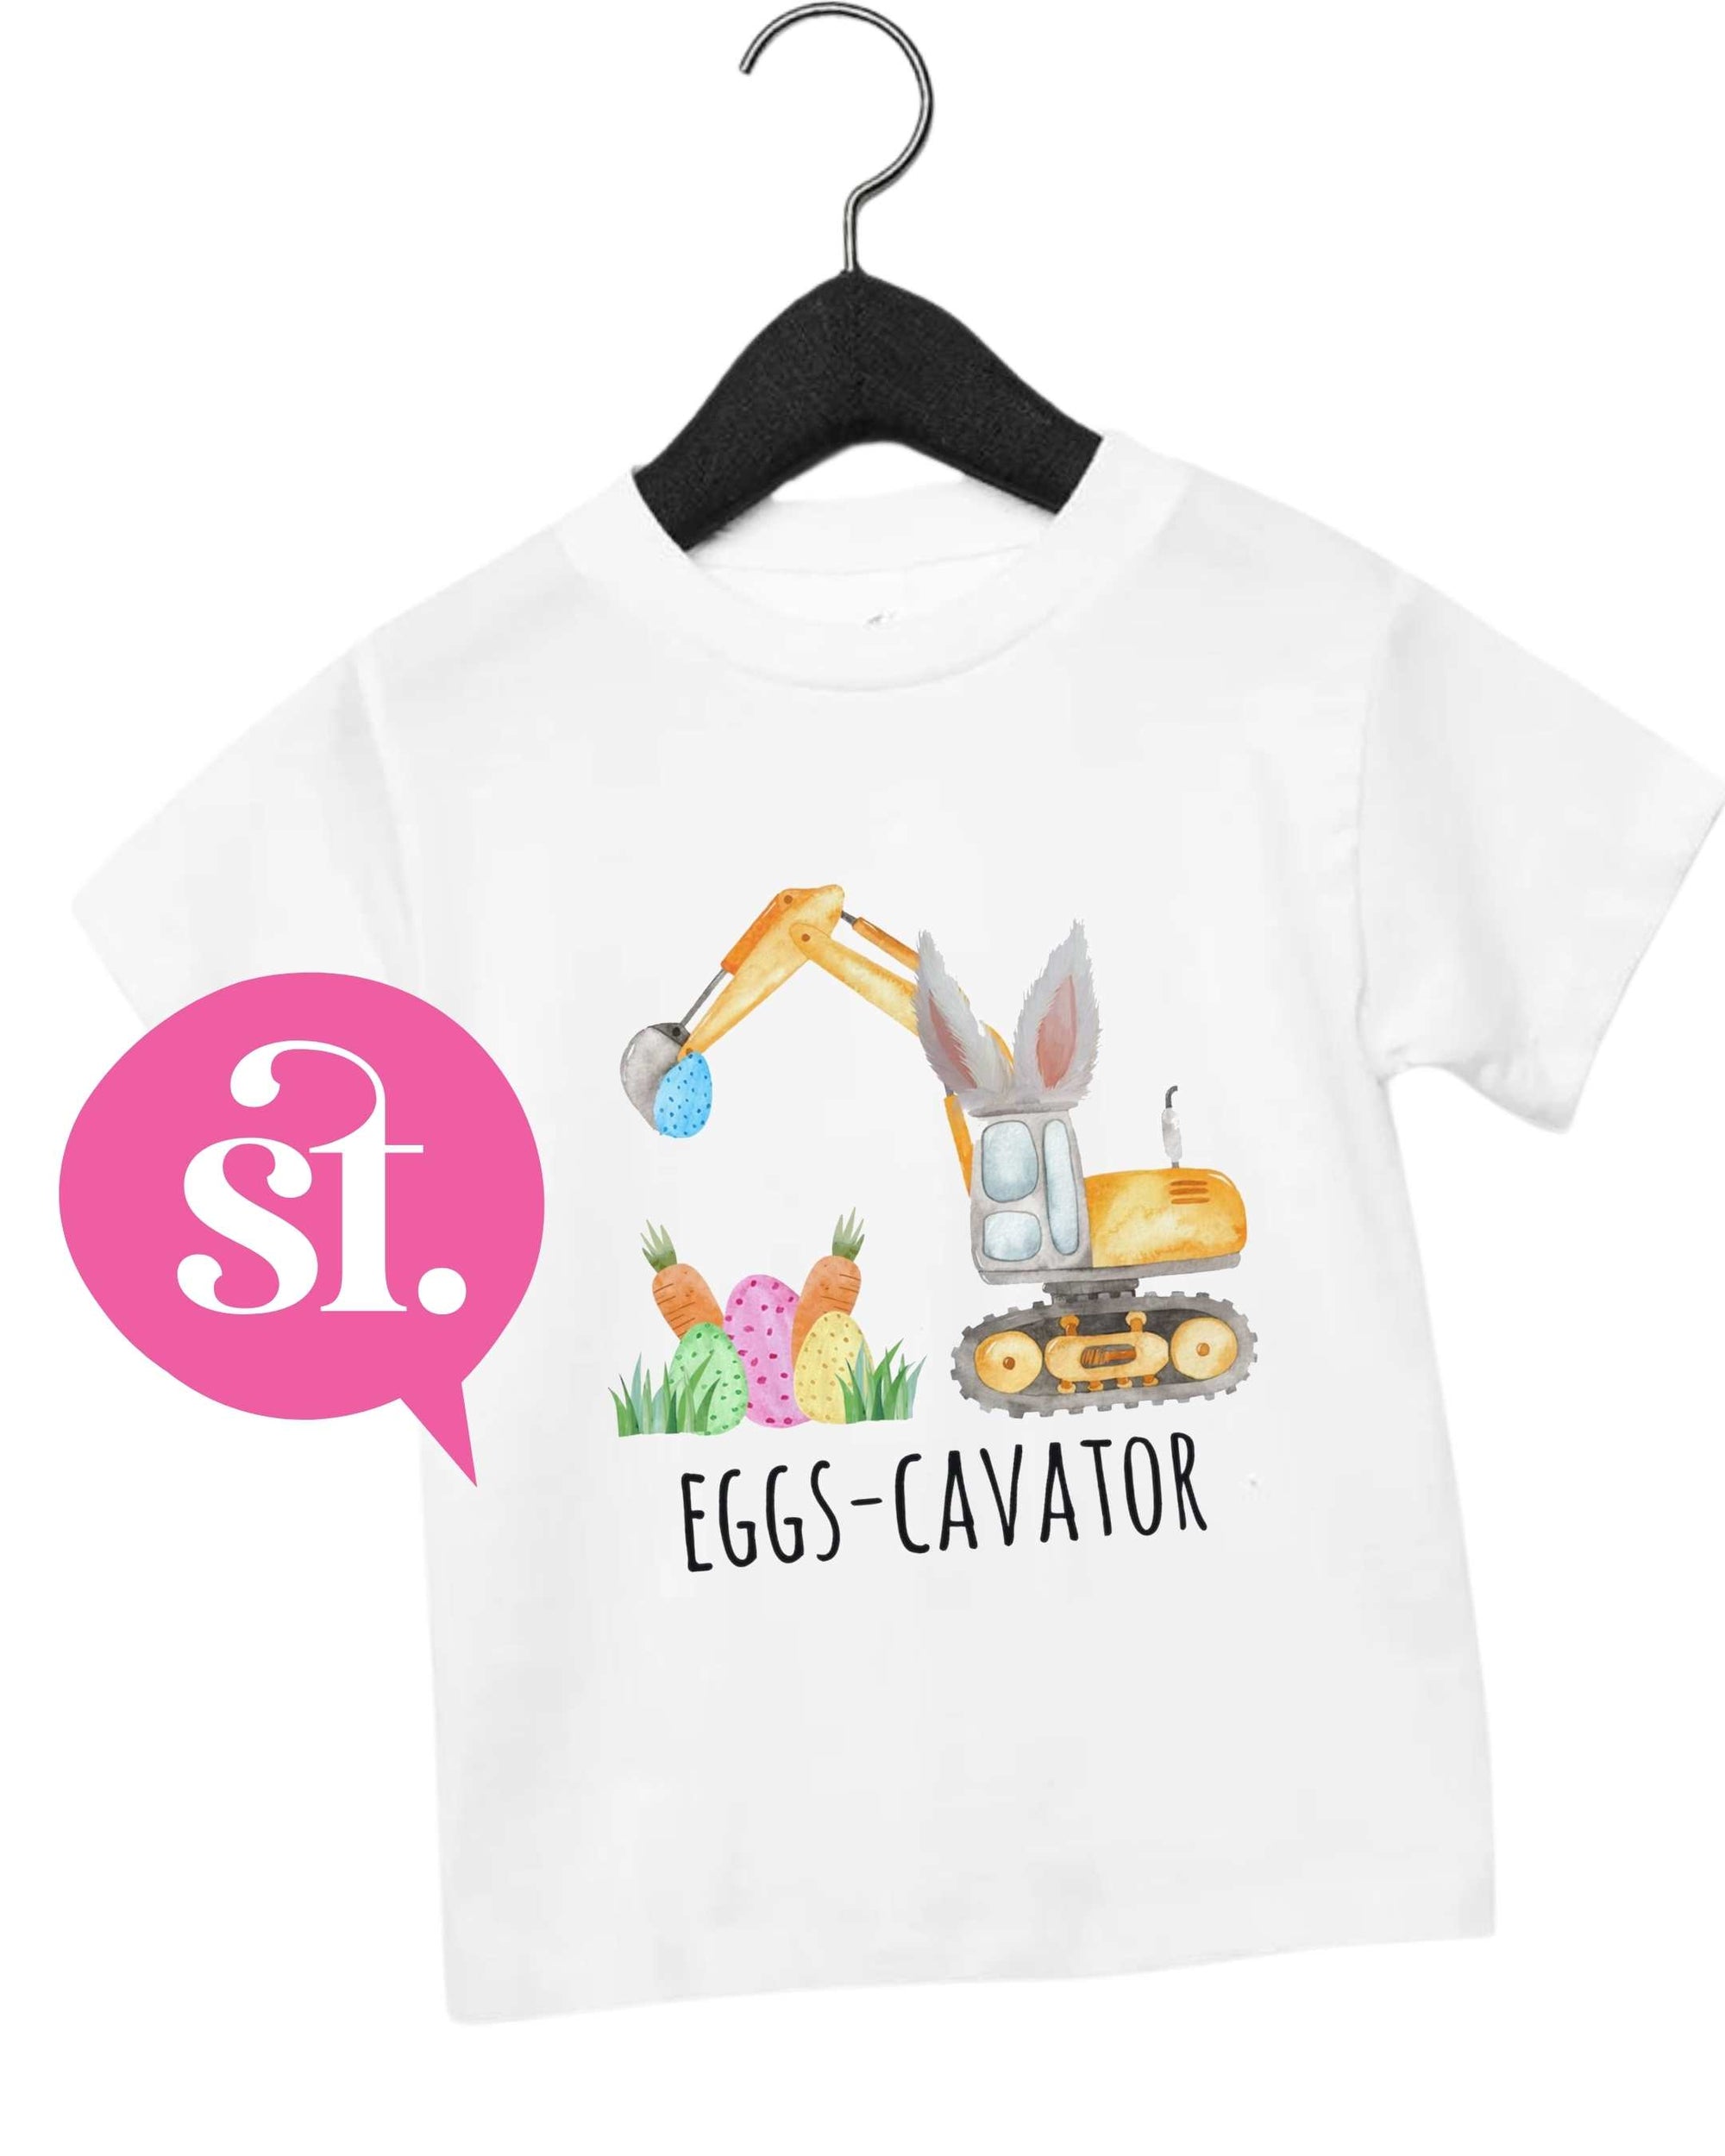 Eggscavator Easter Shirt